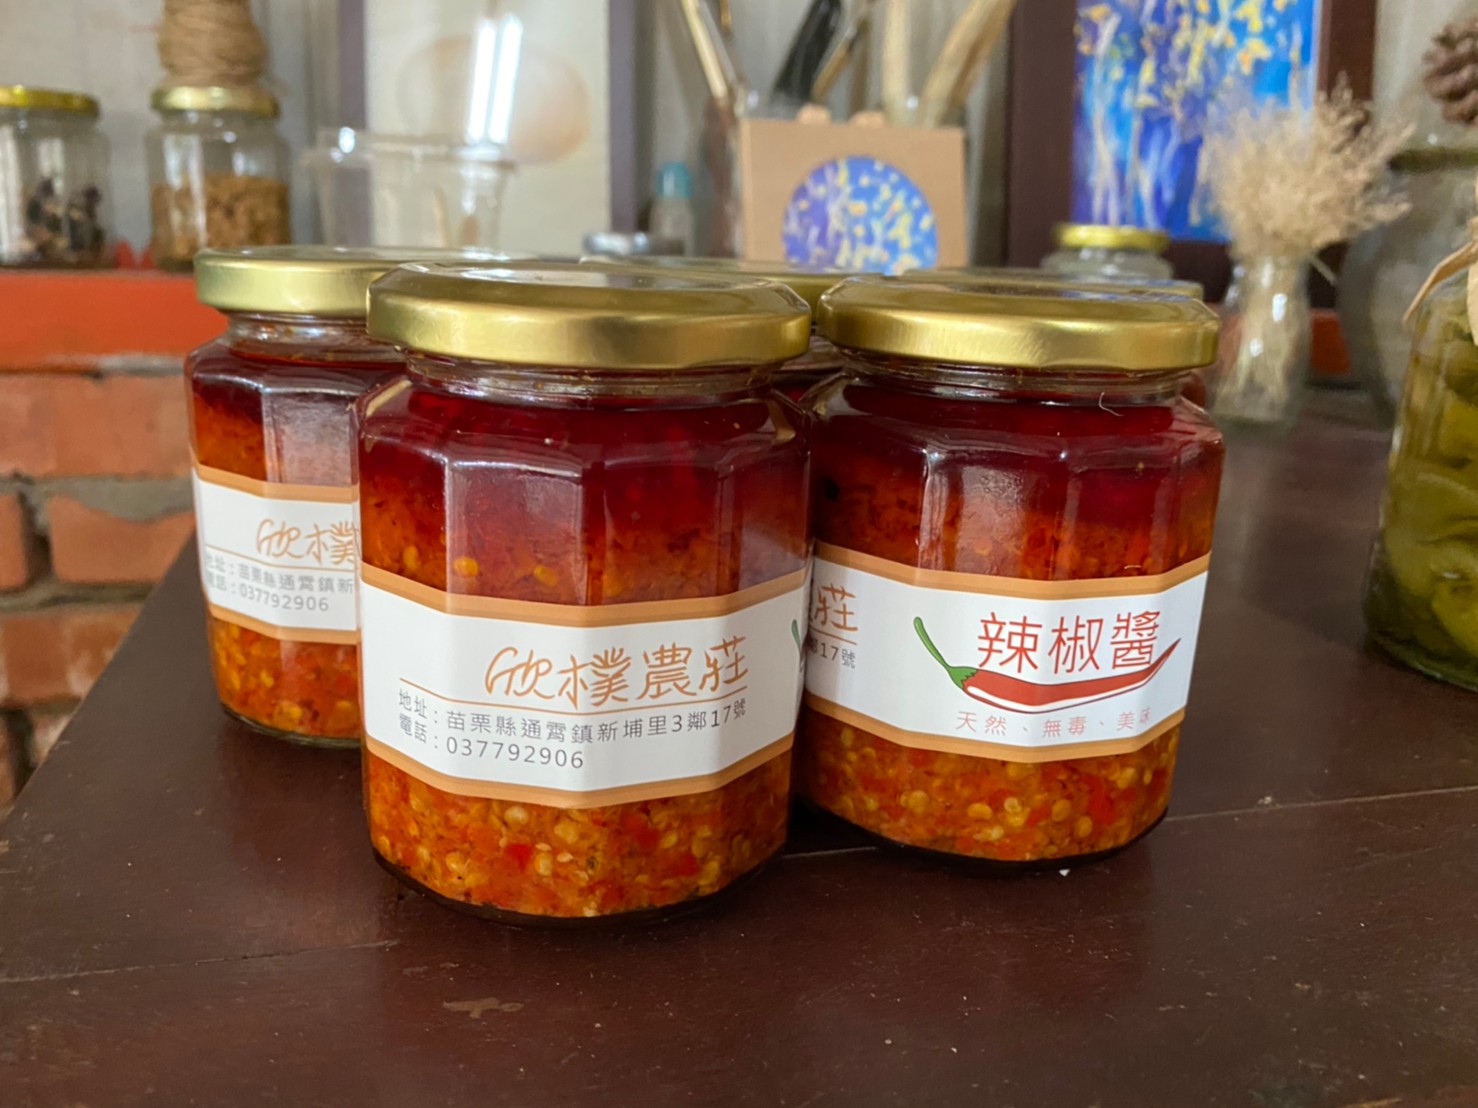 農特產加工品：以古法自製辣椒醬，從包裝到選瓶接下很大功夫。